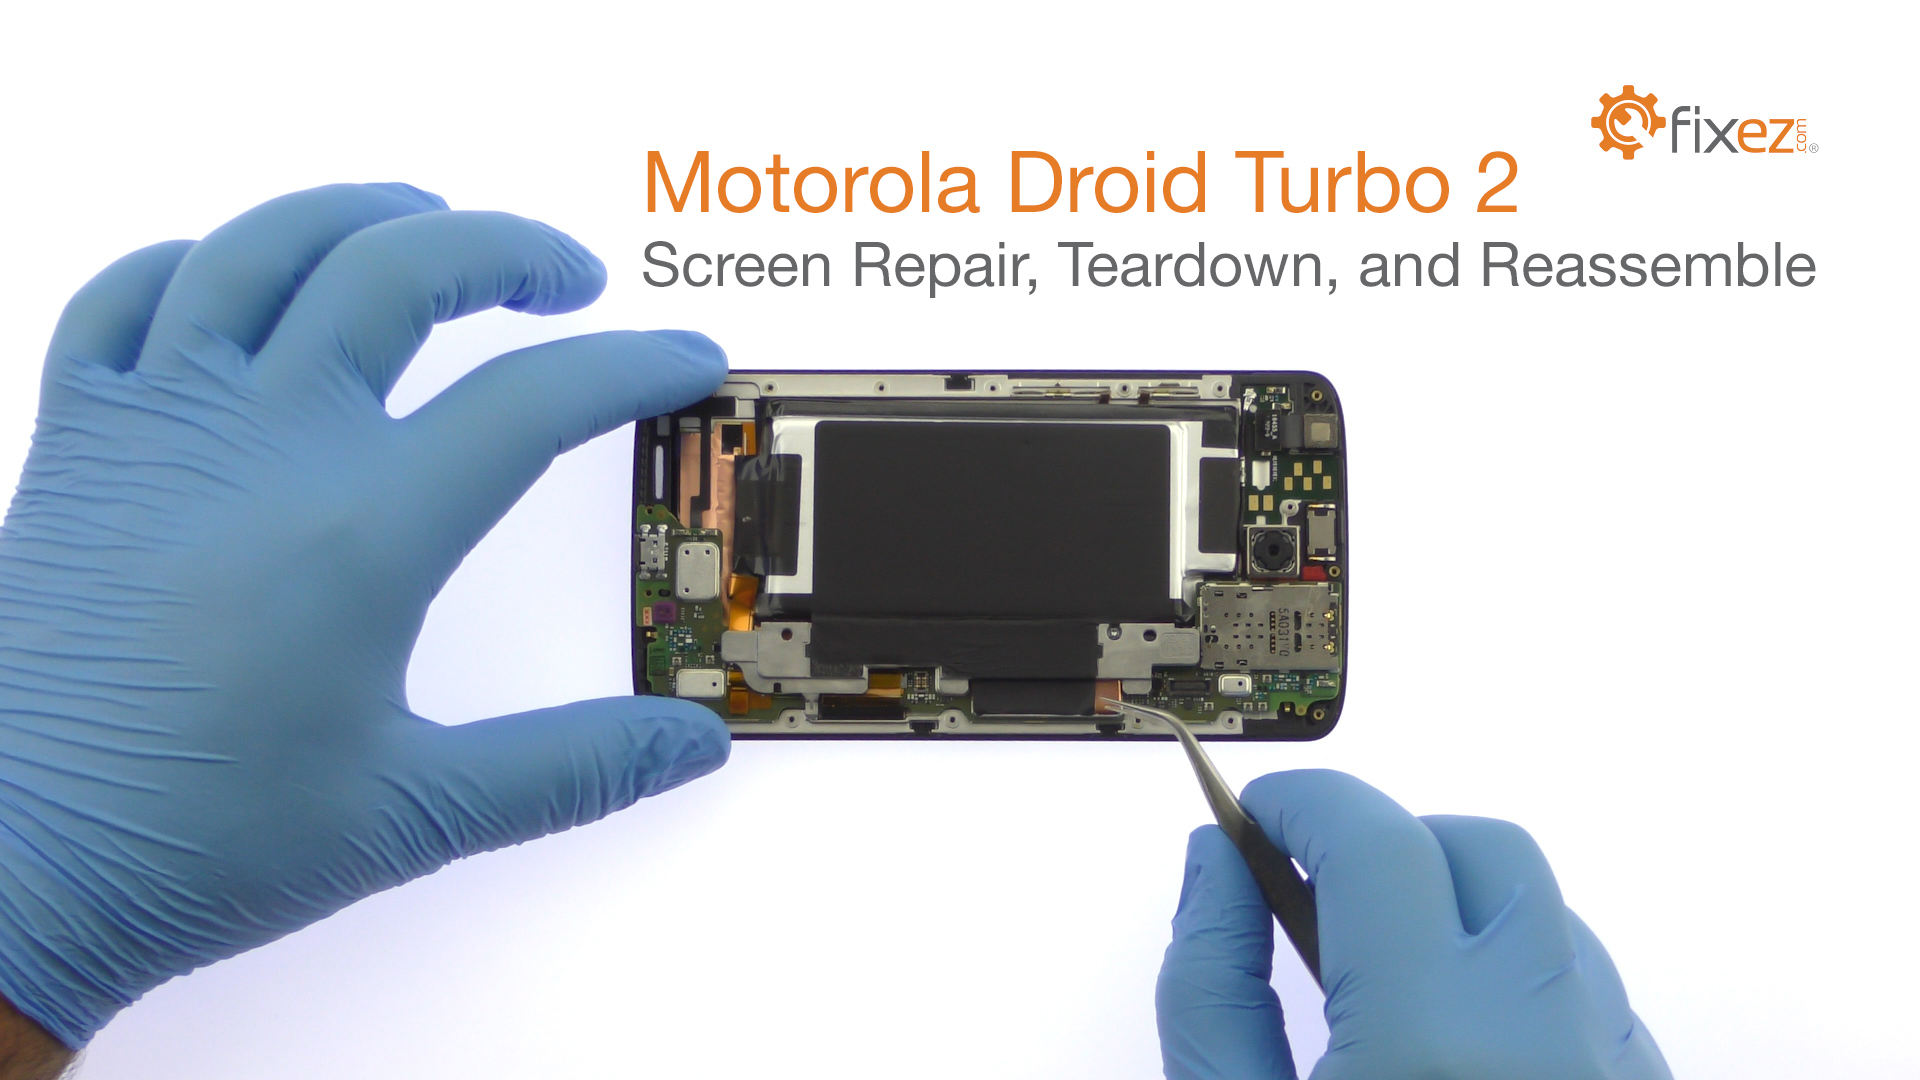 Motorola Droid Turbo 2 Screen Repair, Teardown and Reassemble